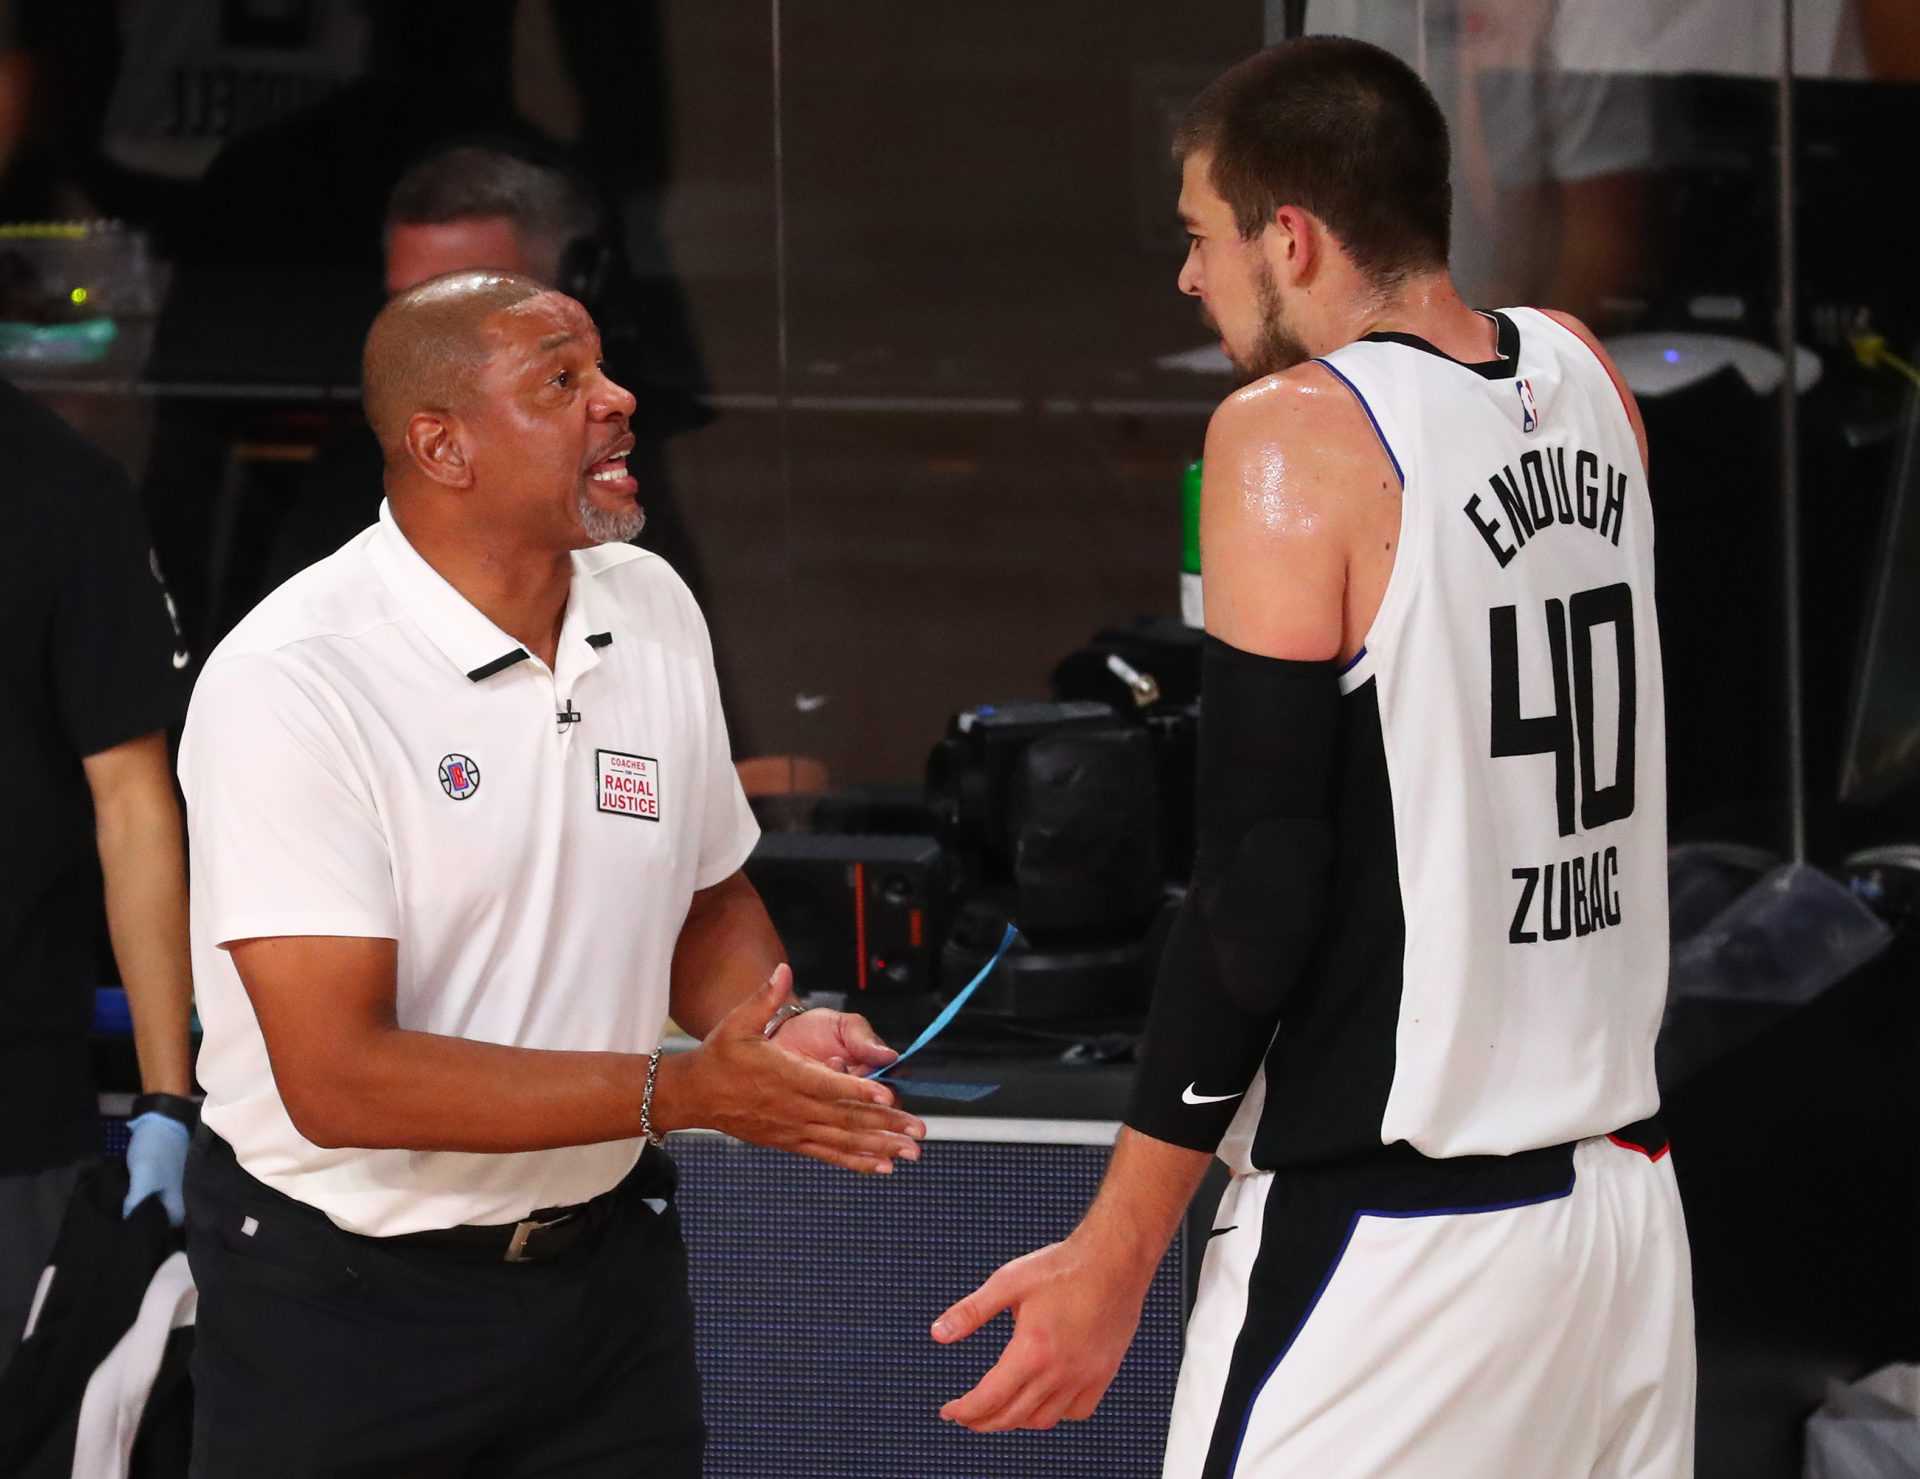 "Je n'ai pas passé beaucoup de temps ensemble": LA Clippers tire des excuses suite à une perte embarrassante contre Nuggets